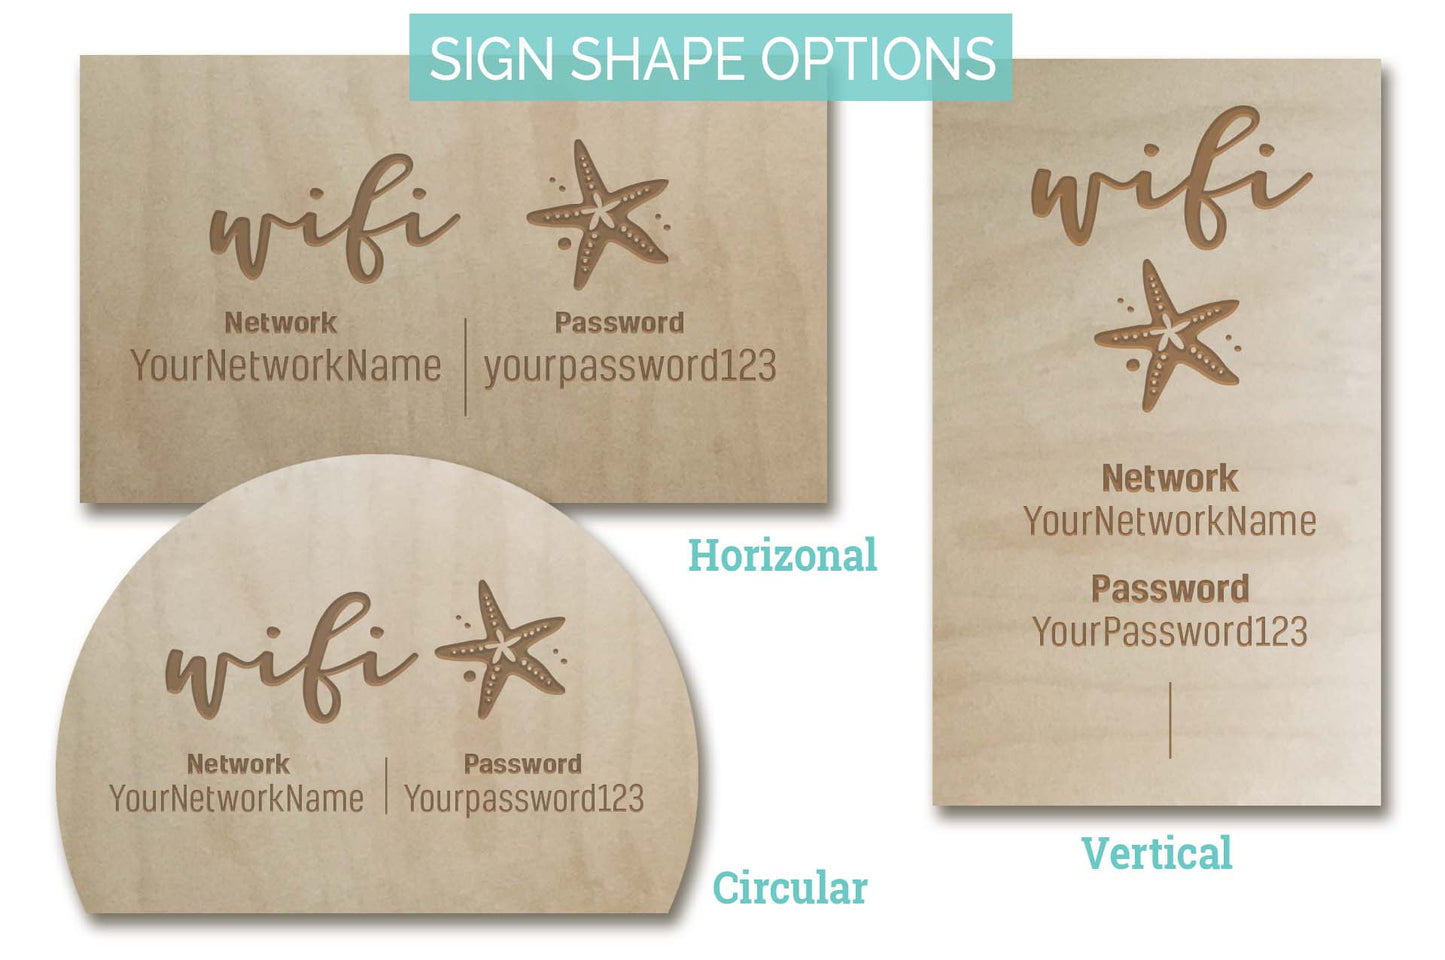 Starfish WiFi Password Sign, Beach, Wood